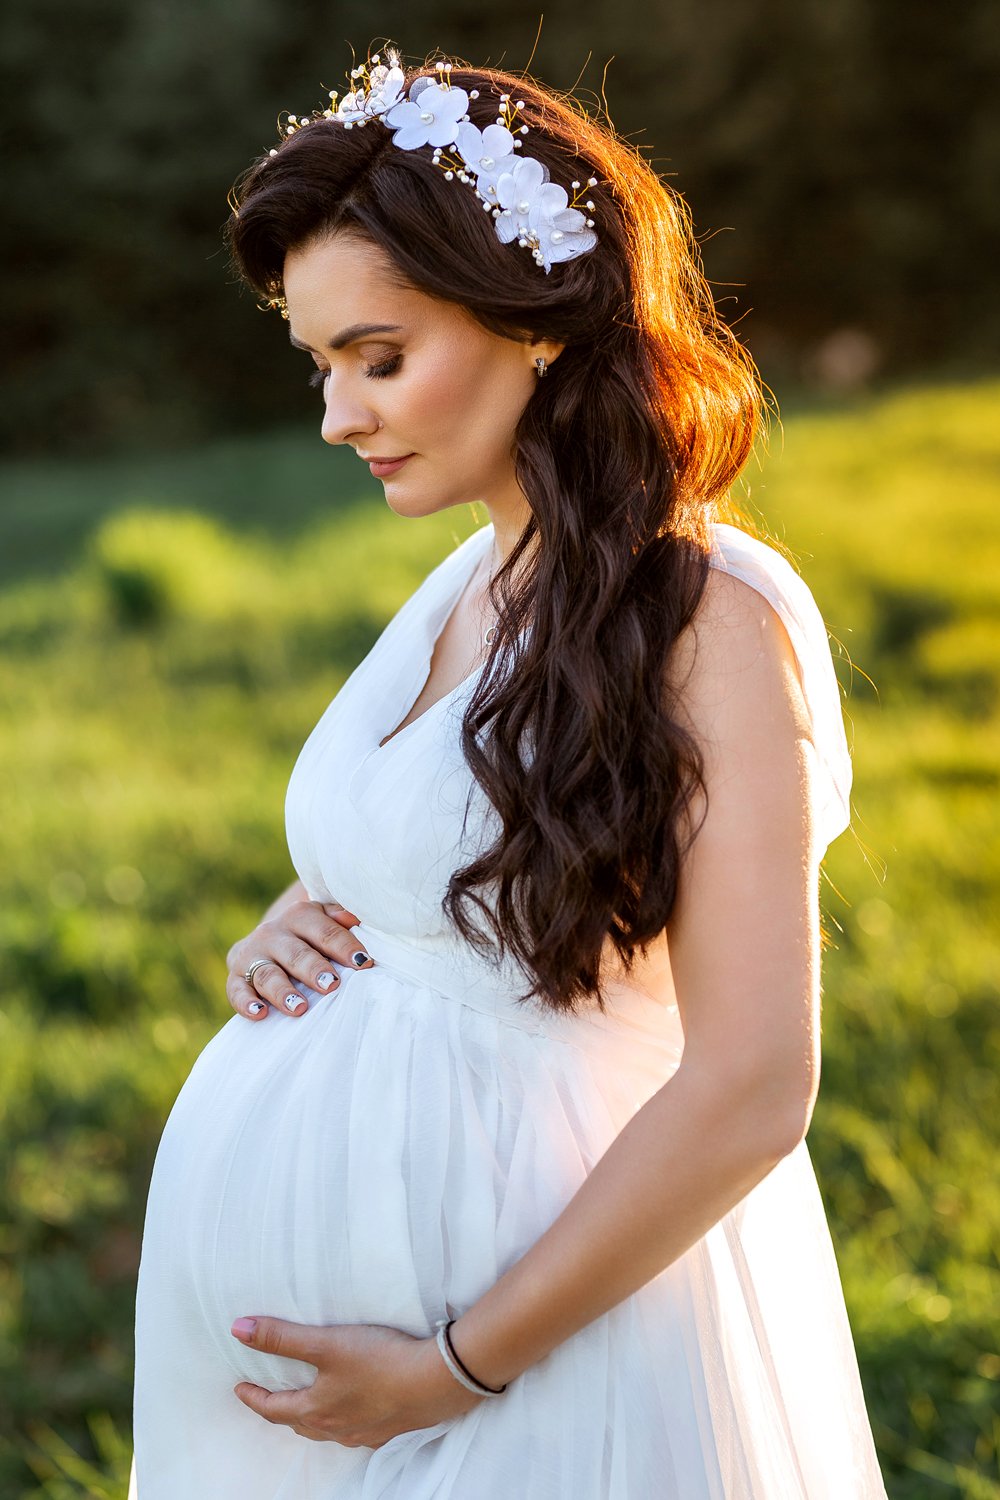 Прокат коломна. Платье напрокат для беременных на фотосессию. Фотосессия беременных в Коломенском. Аренда платьев для беременных для фотосессии. Нежный макияж для фотосессии беременной.